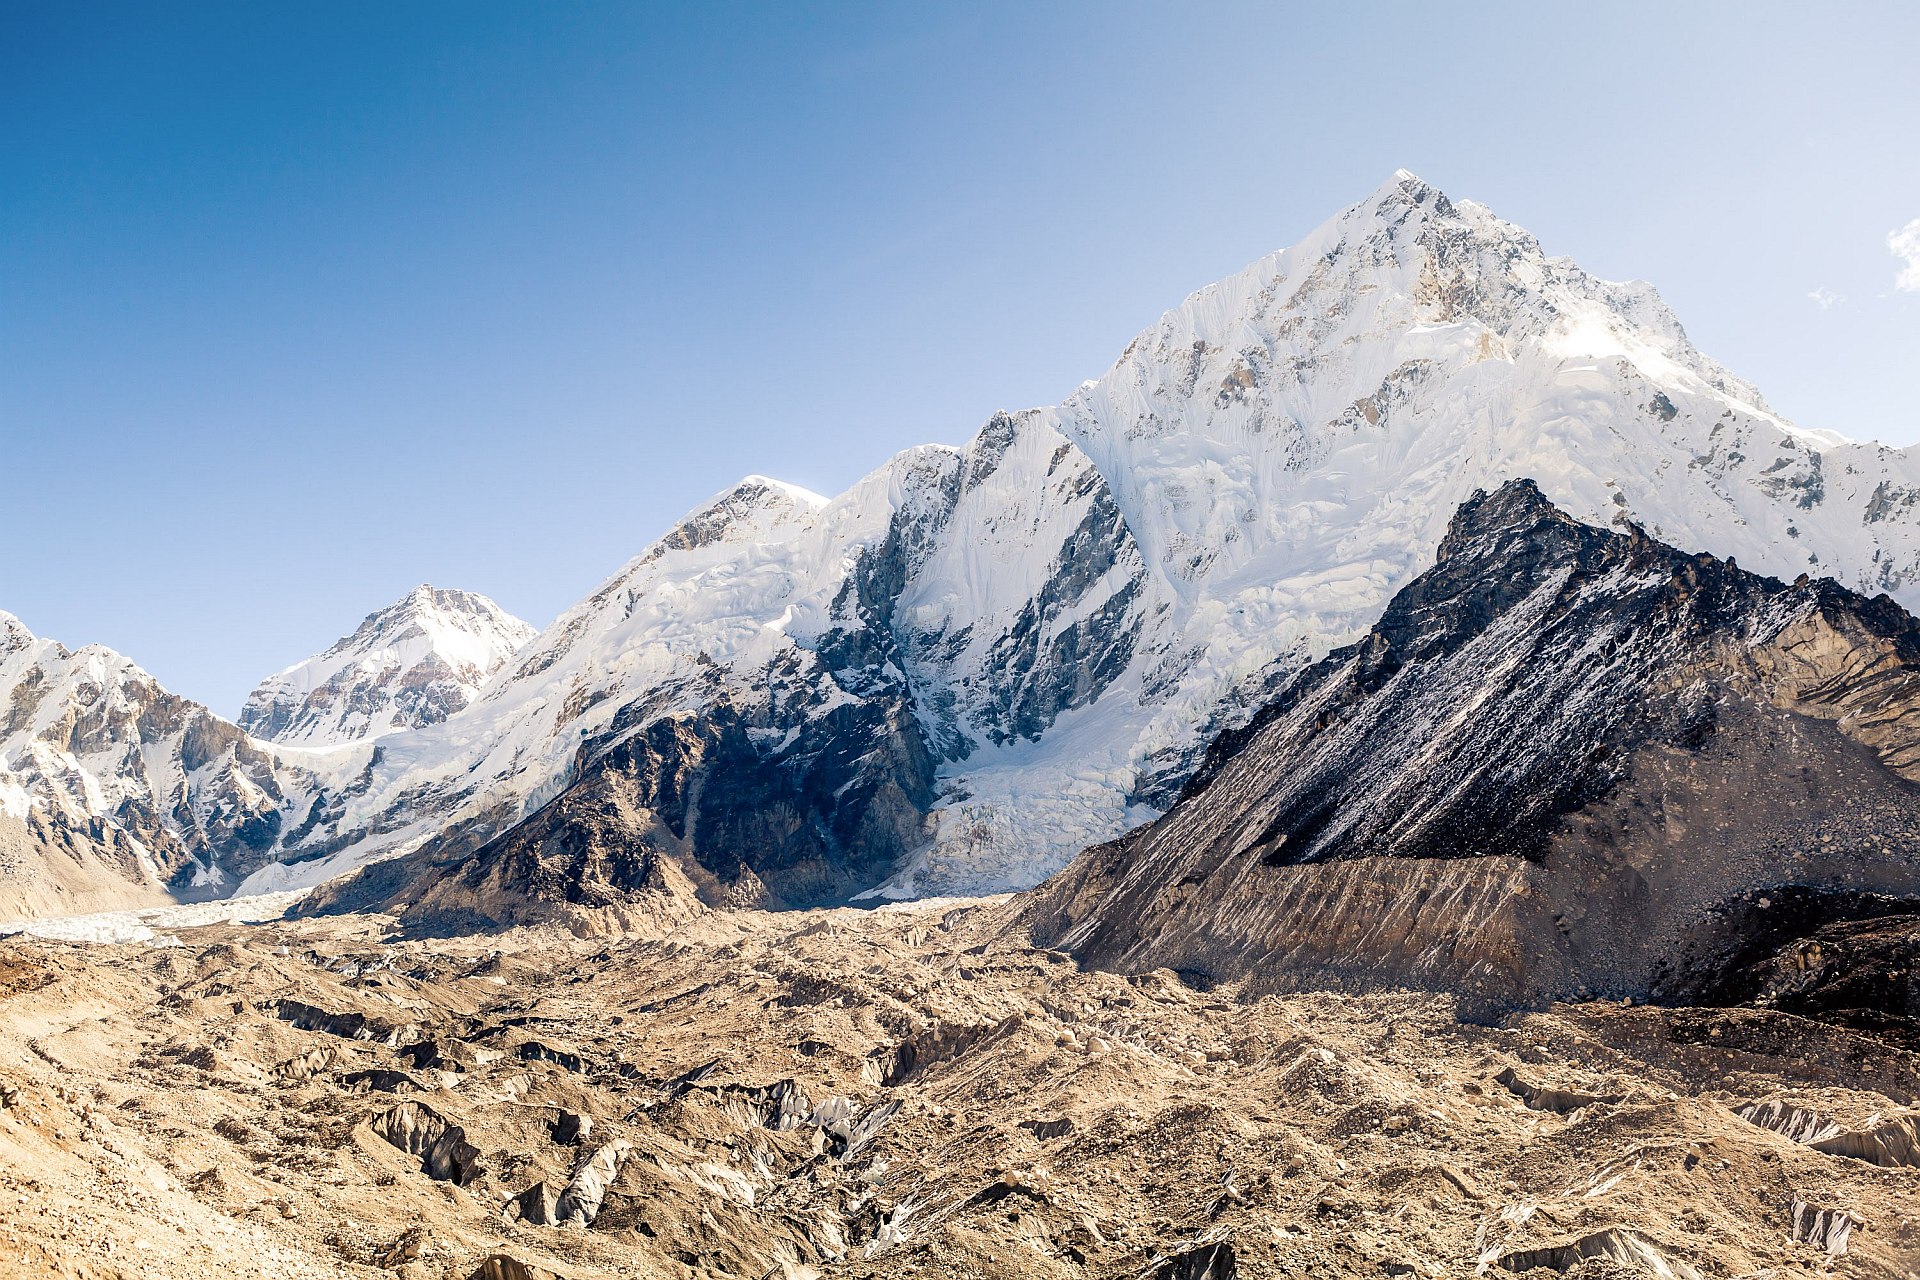 Szczyty Lotse i Nuptse, lodowiec Khumbu, Himalaje, Nepal